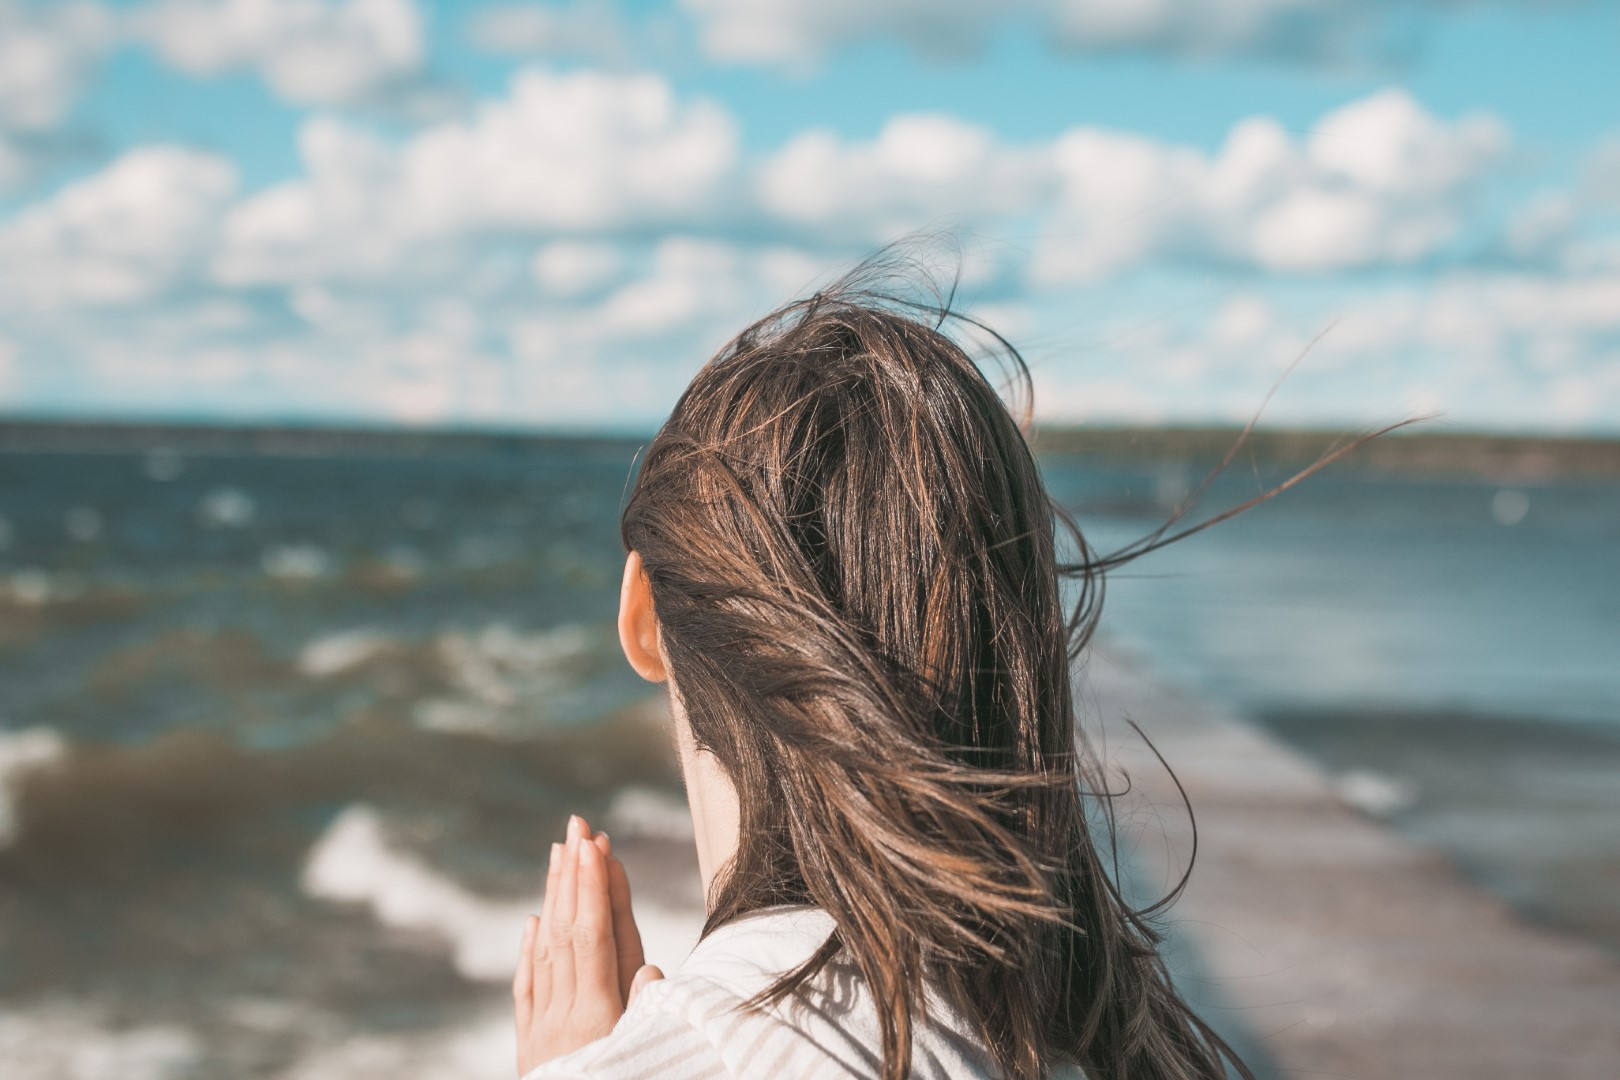 kobieta modli się na plaży, zwrócona w stronę morza